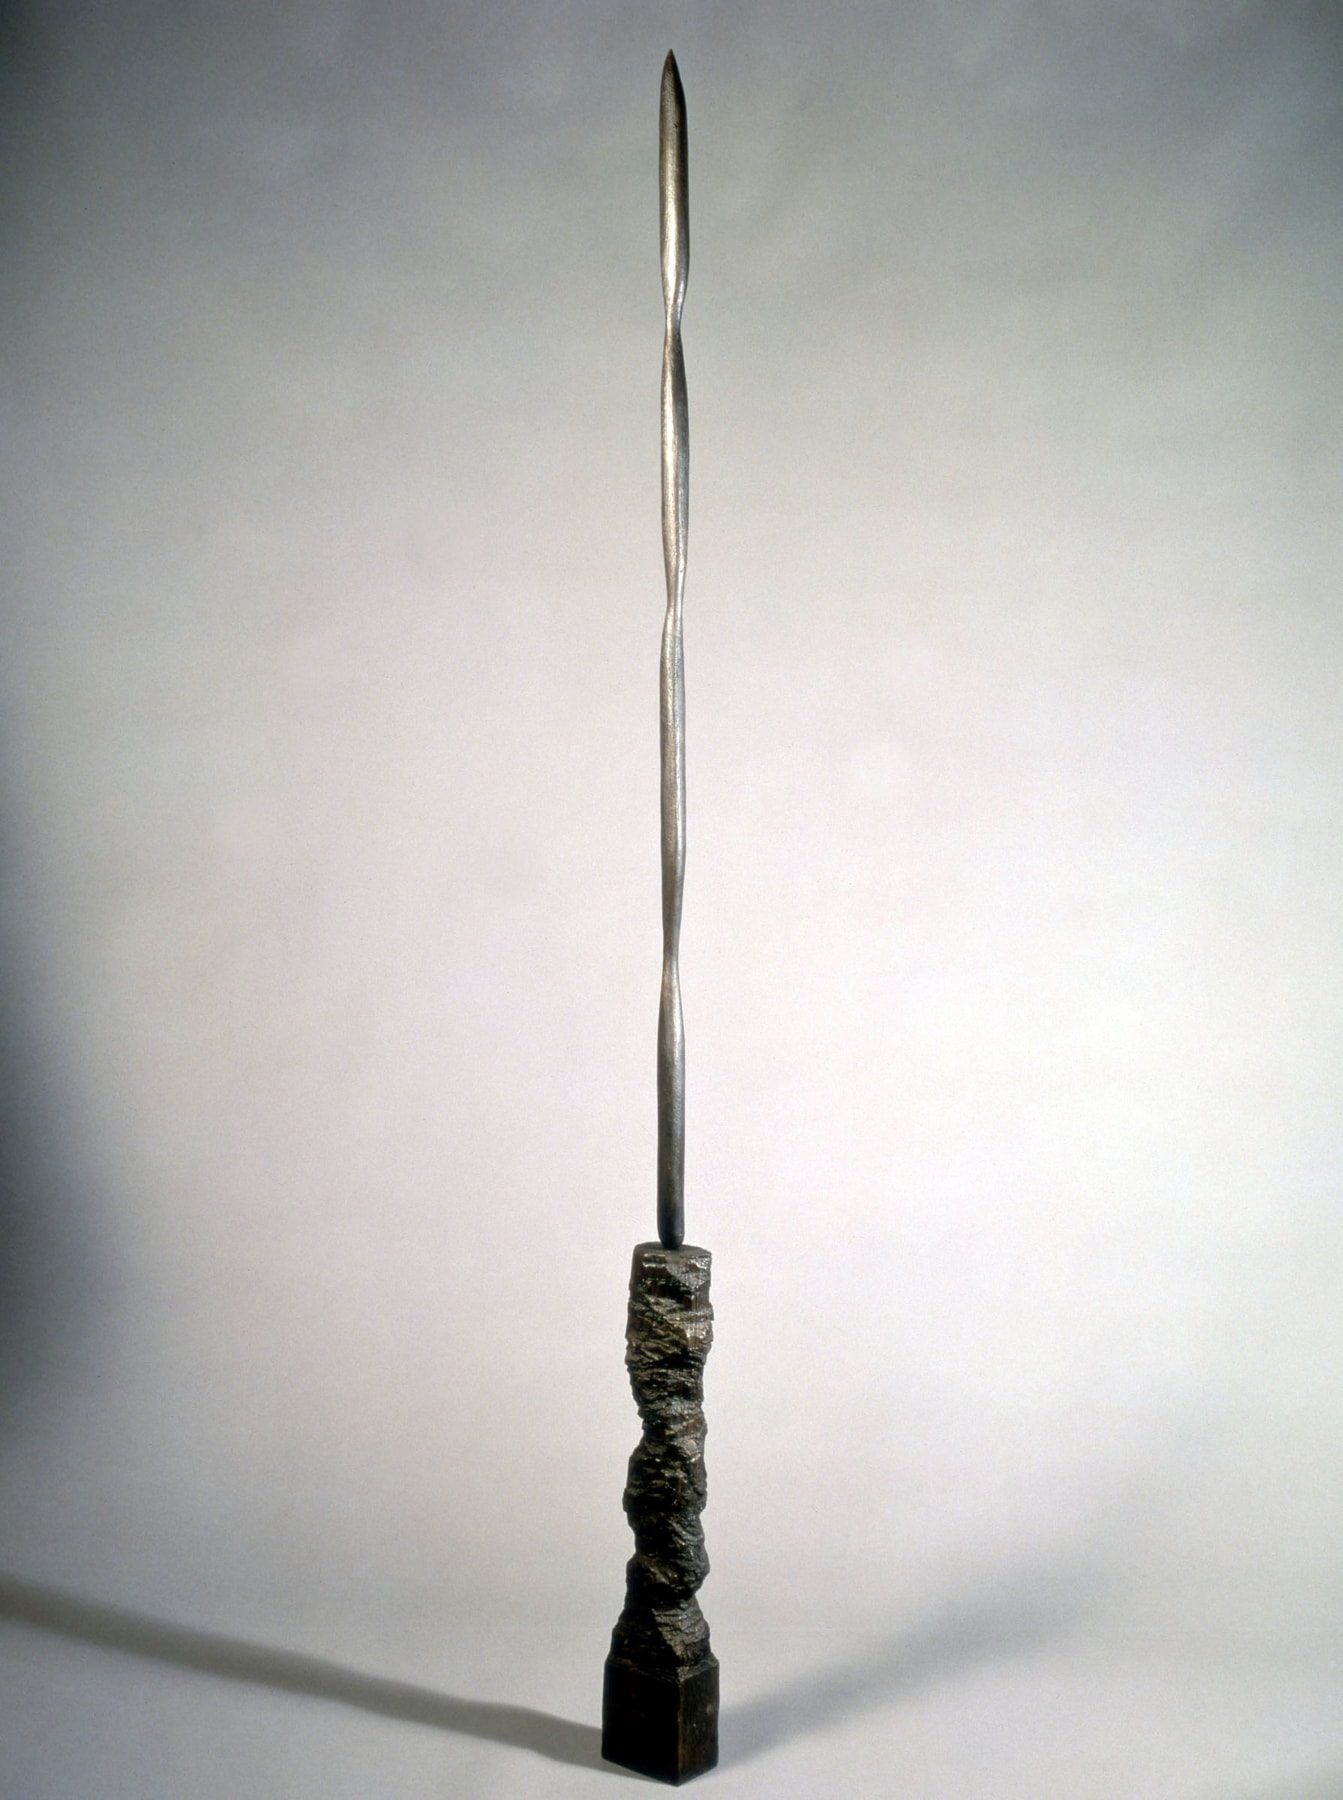 A.R. Penck, Waffe (Weapon), 1987